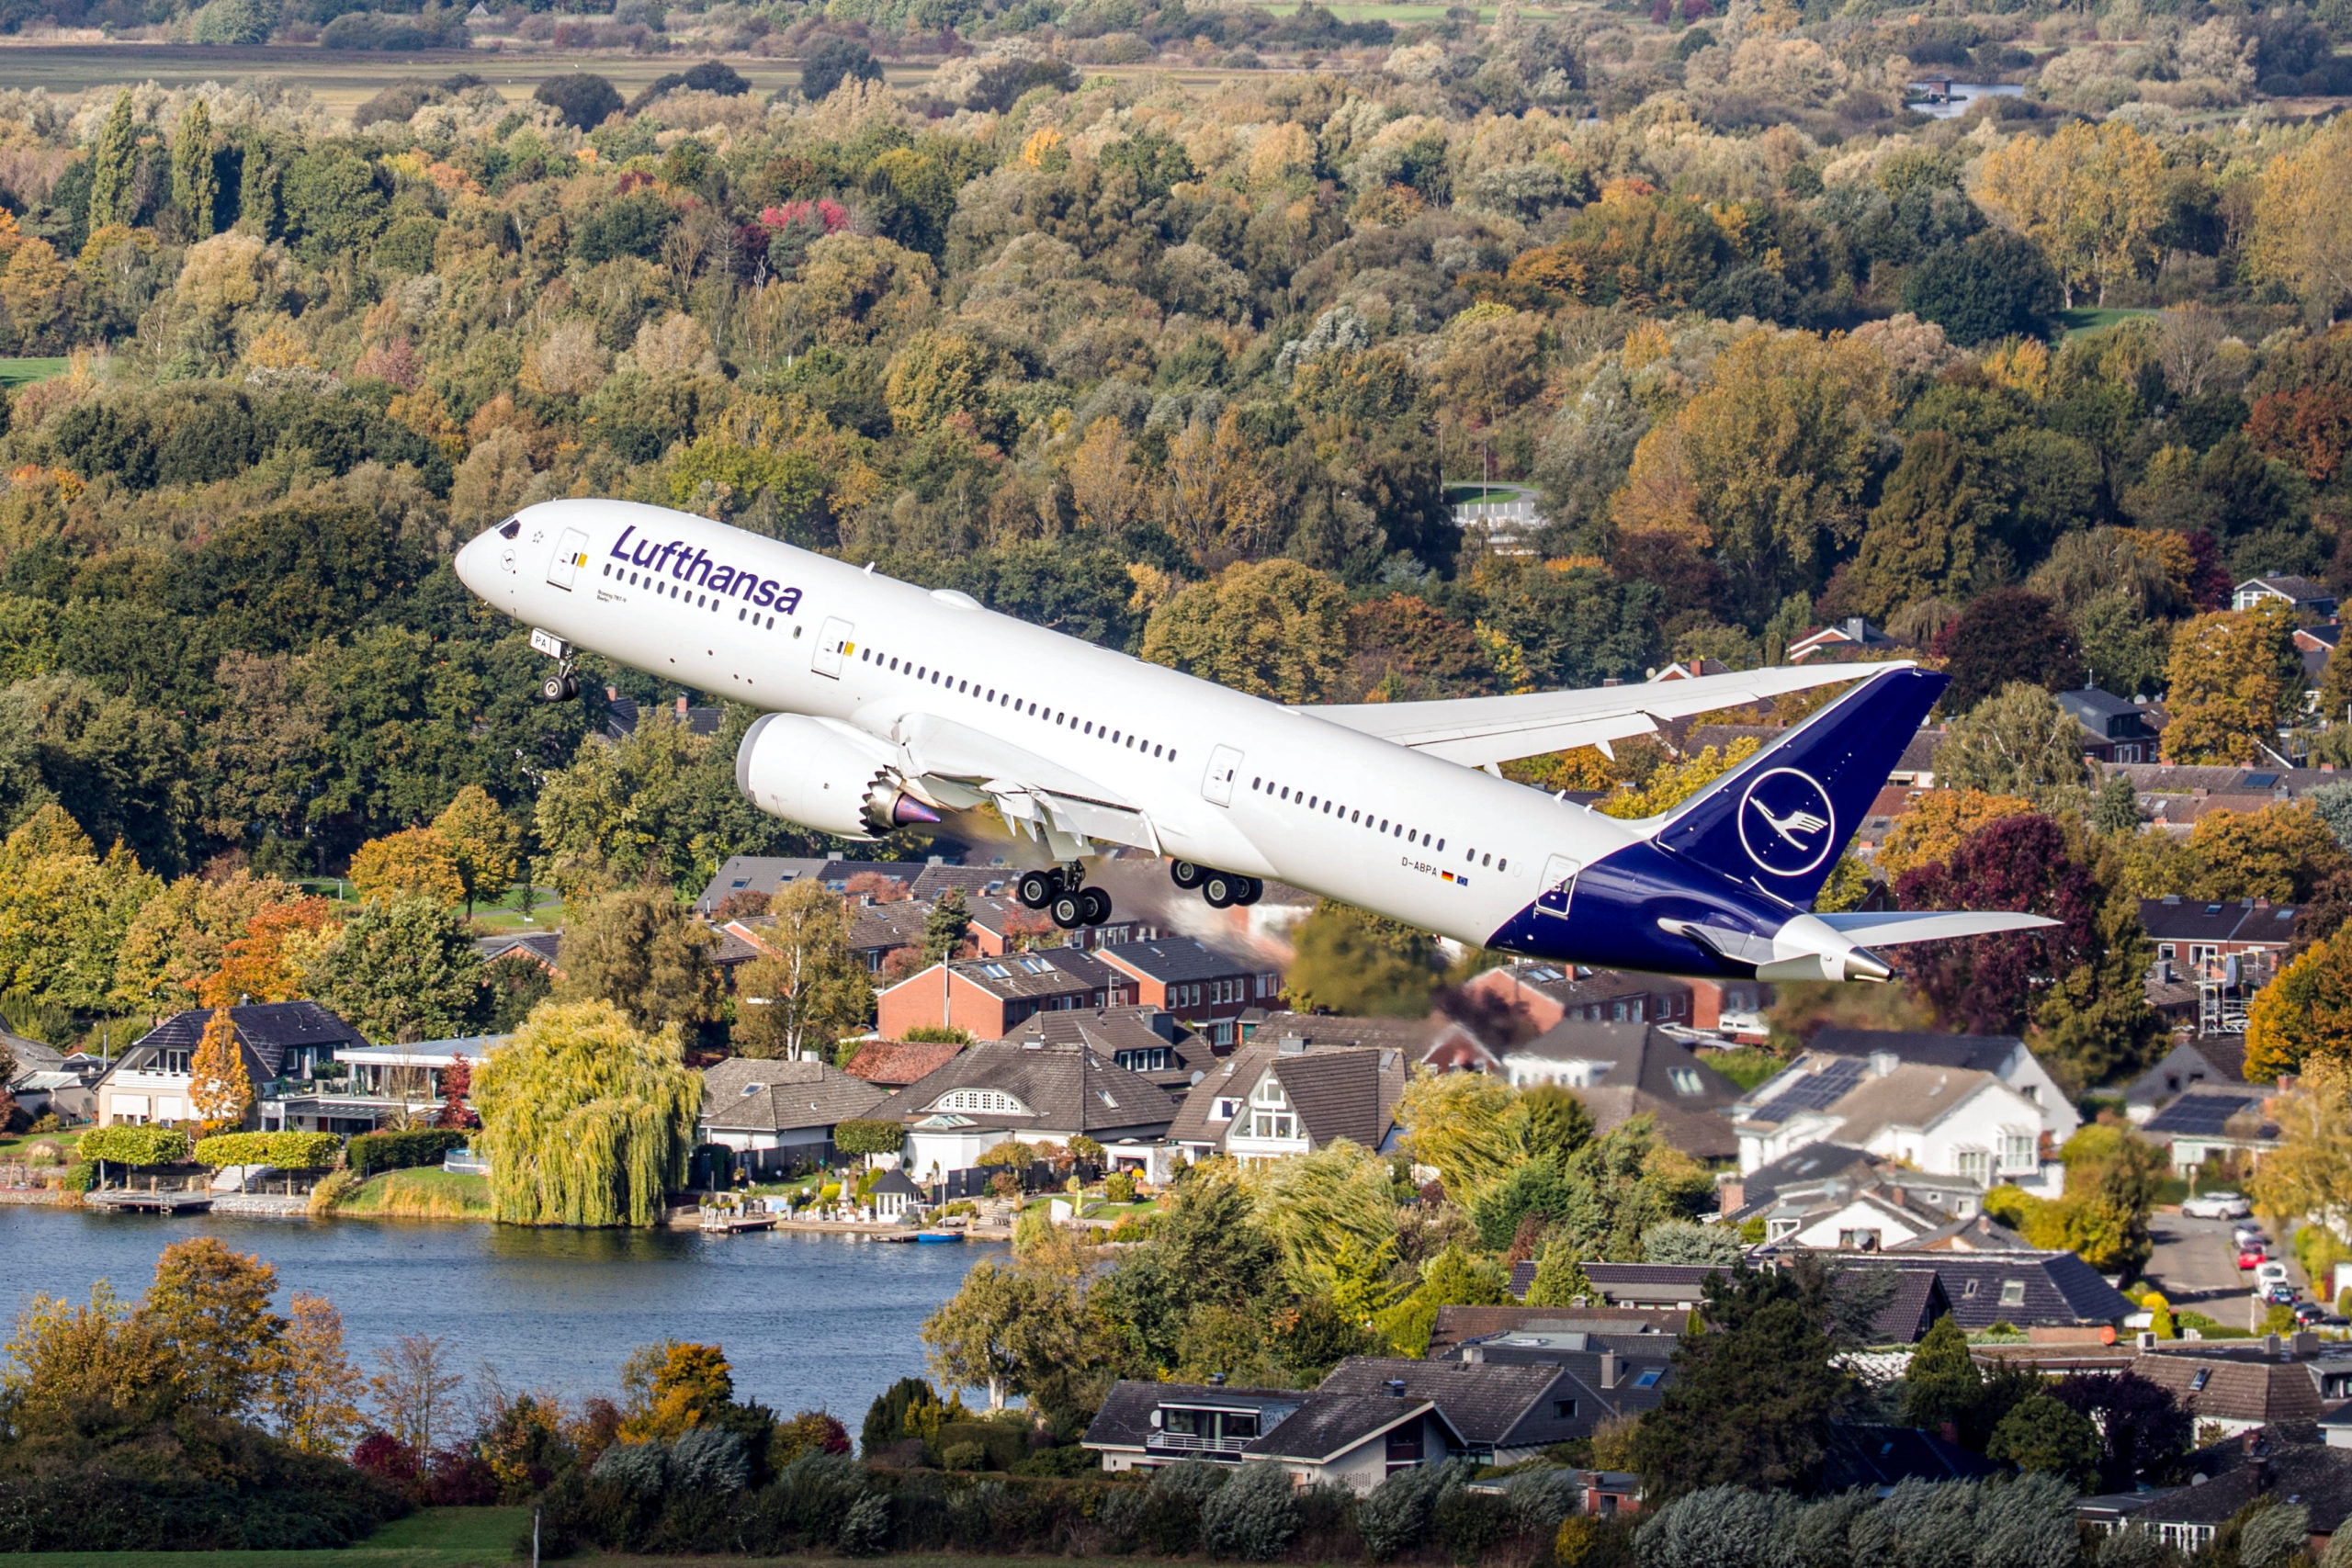 Lufthansa-Airbus lässt 75 Tonnen Kerosin über Bayern ab - Es ist kein  Einzelfall